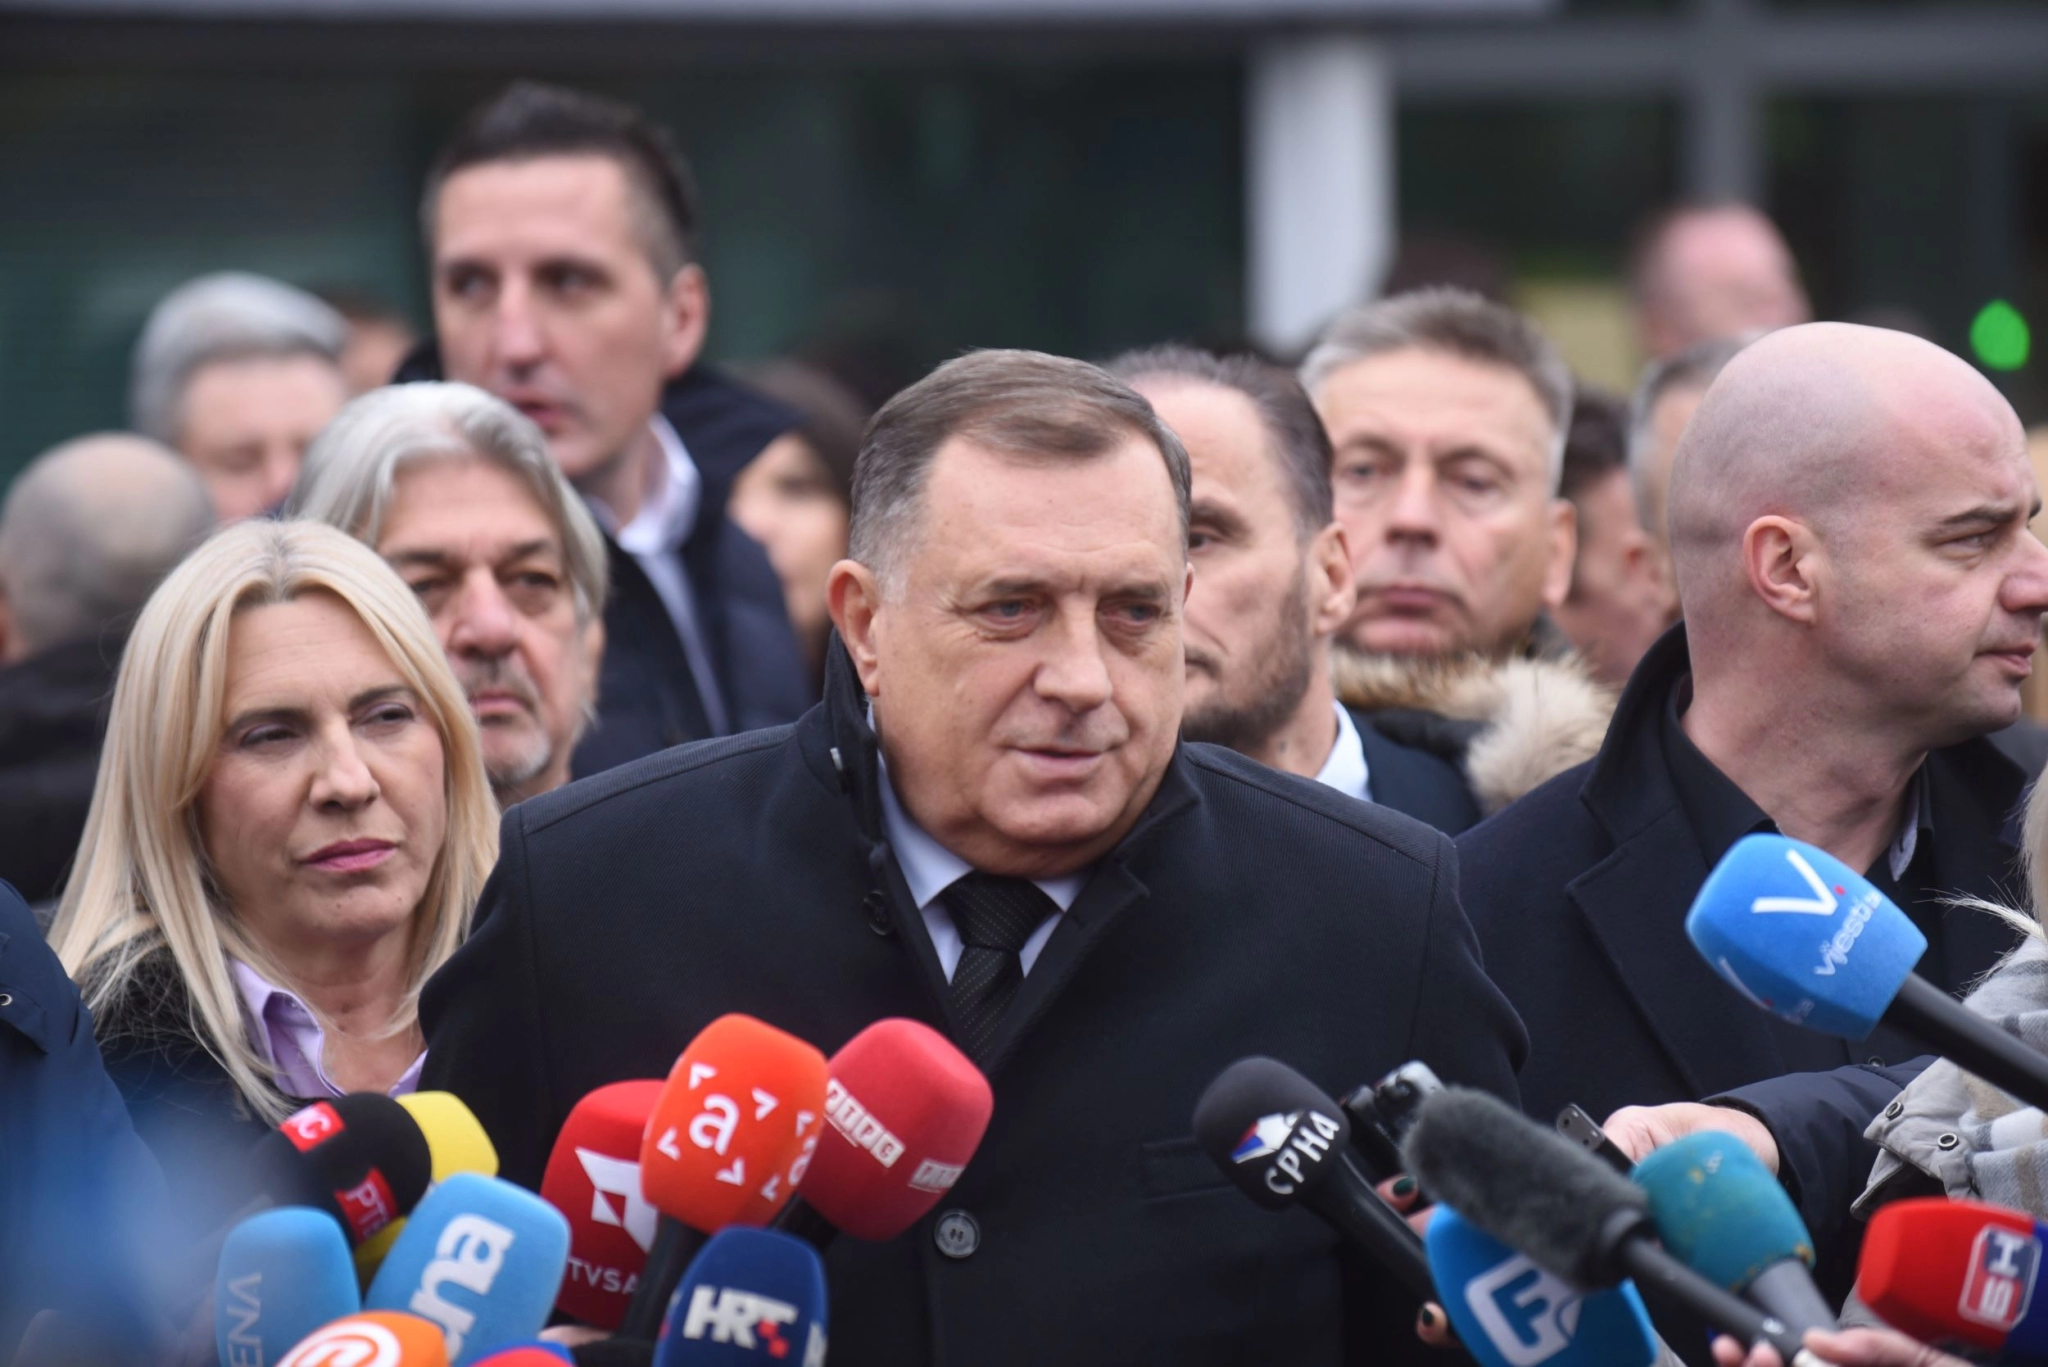 Dolazi li ponašanje vrha Republike Srpske na naplatu?